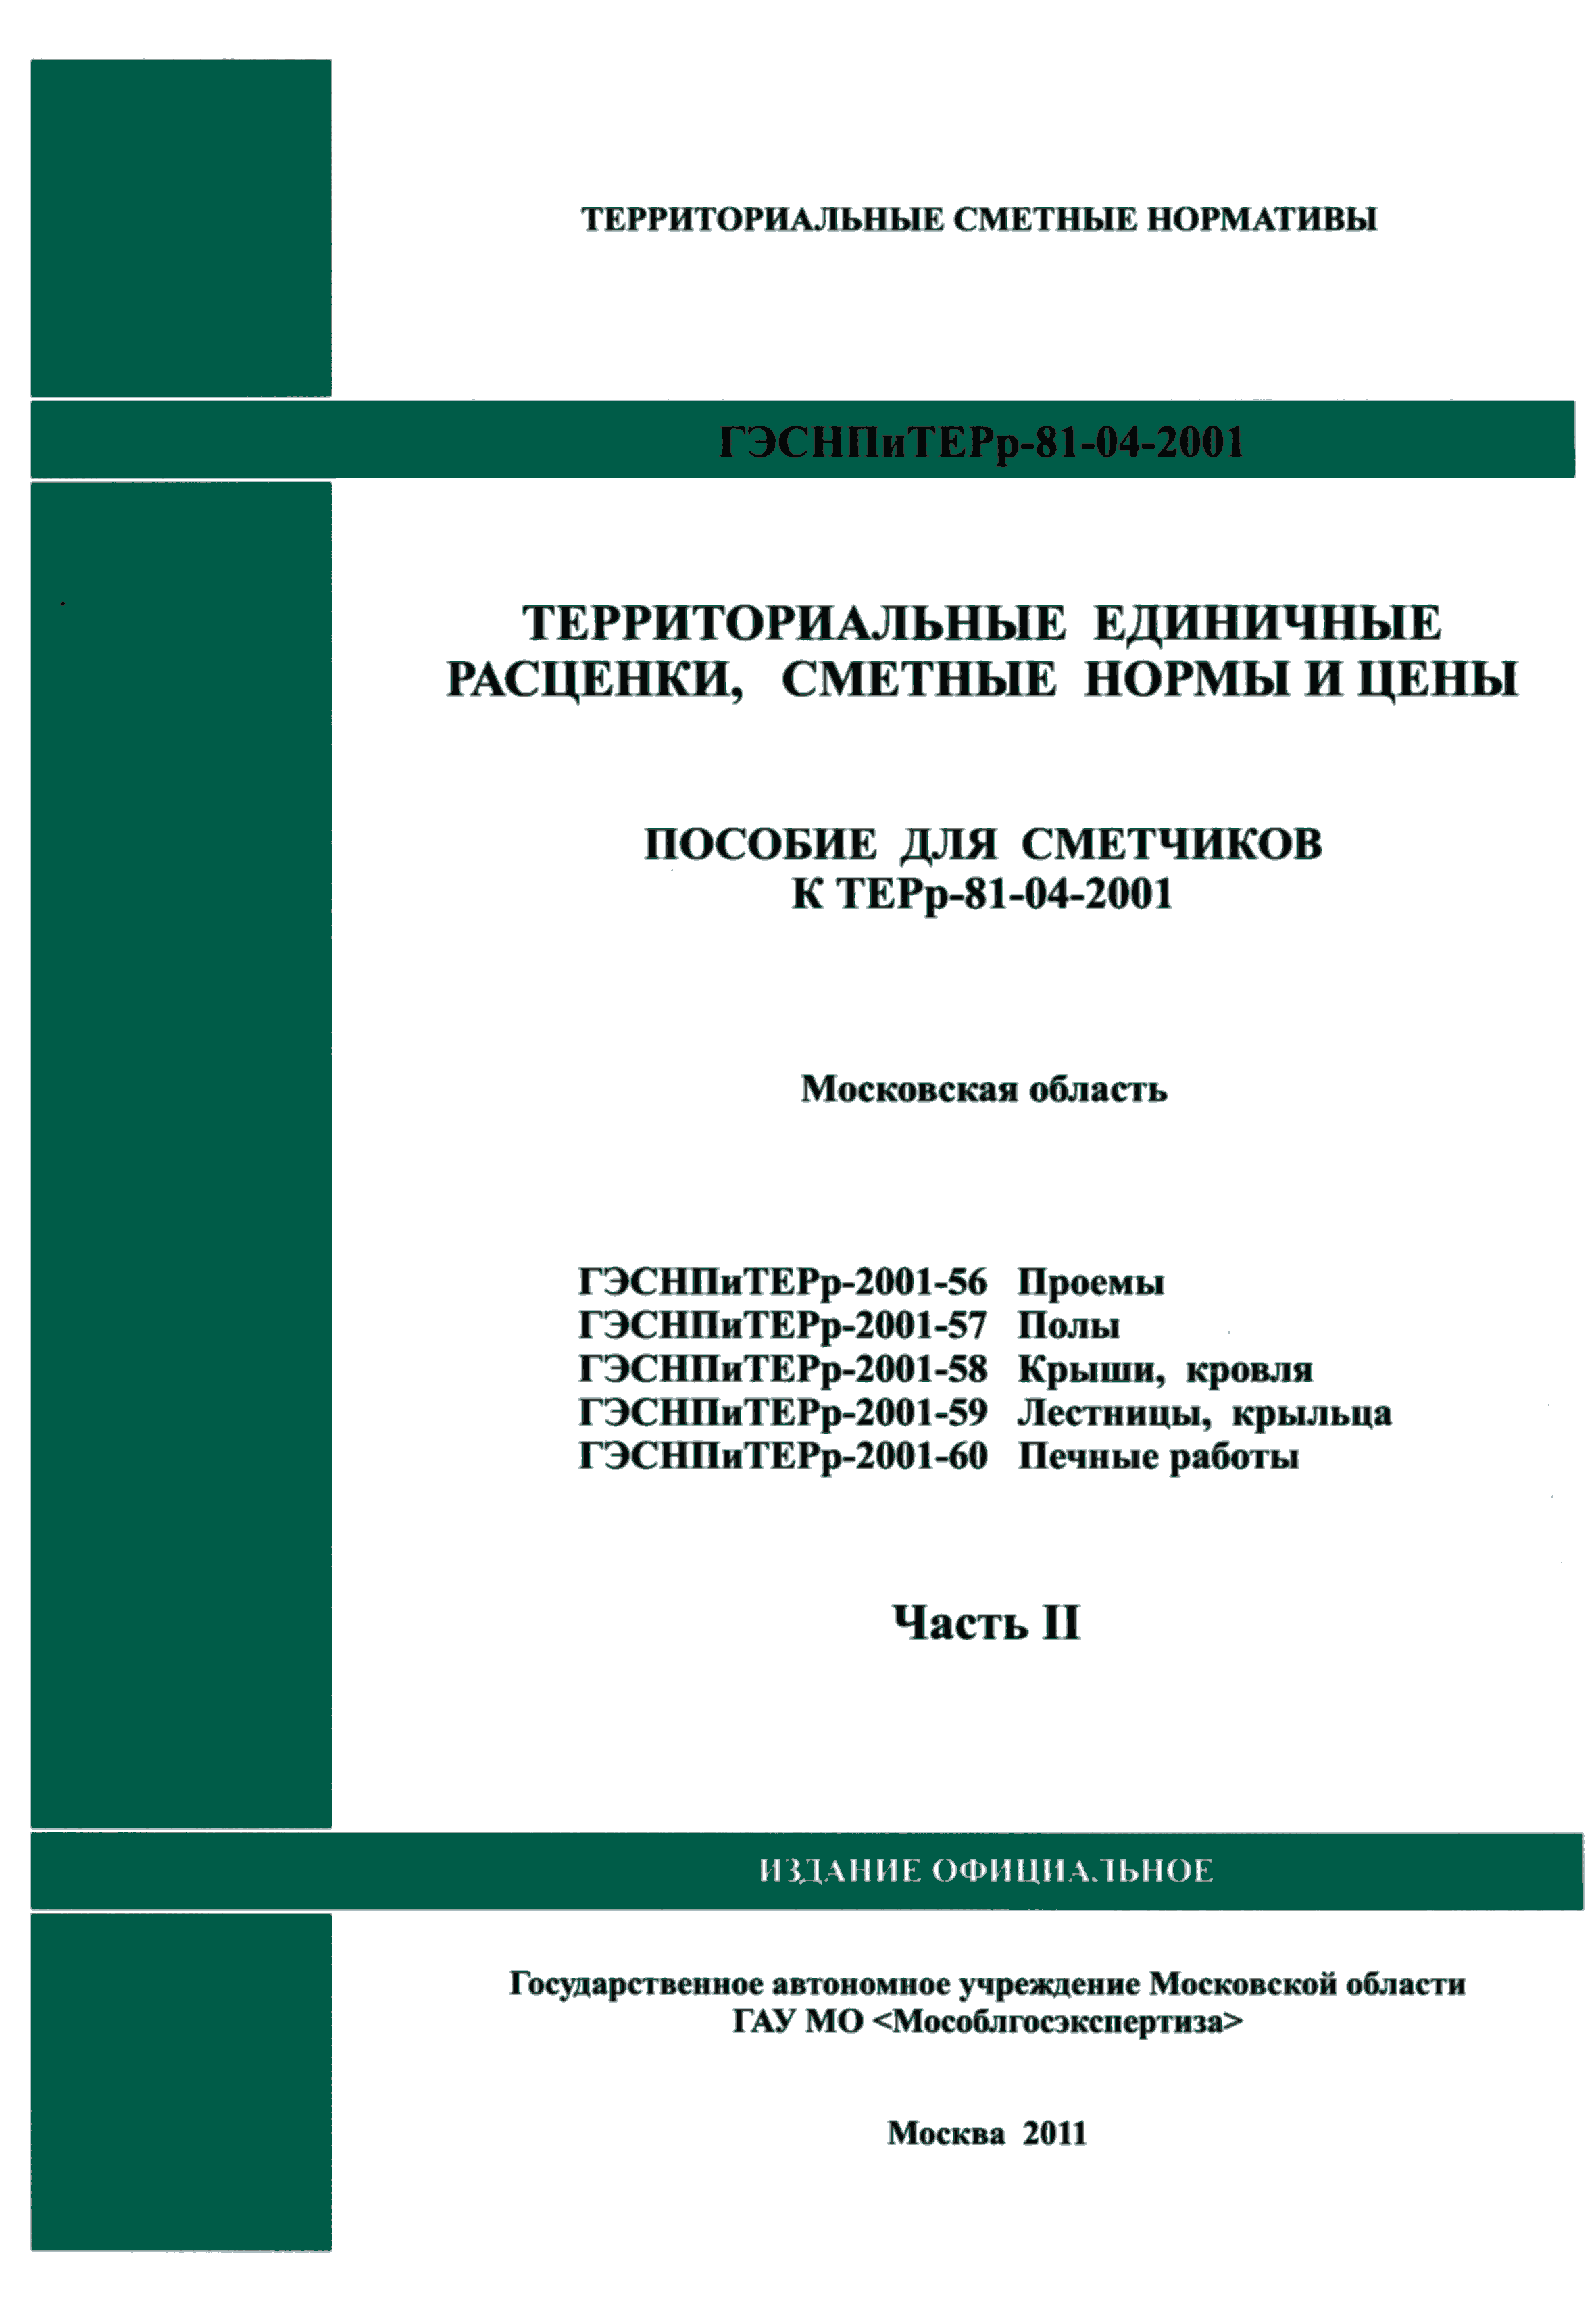 ГЭСНПиТЕРр 2001-59 Московской области